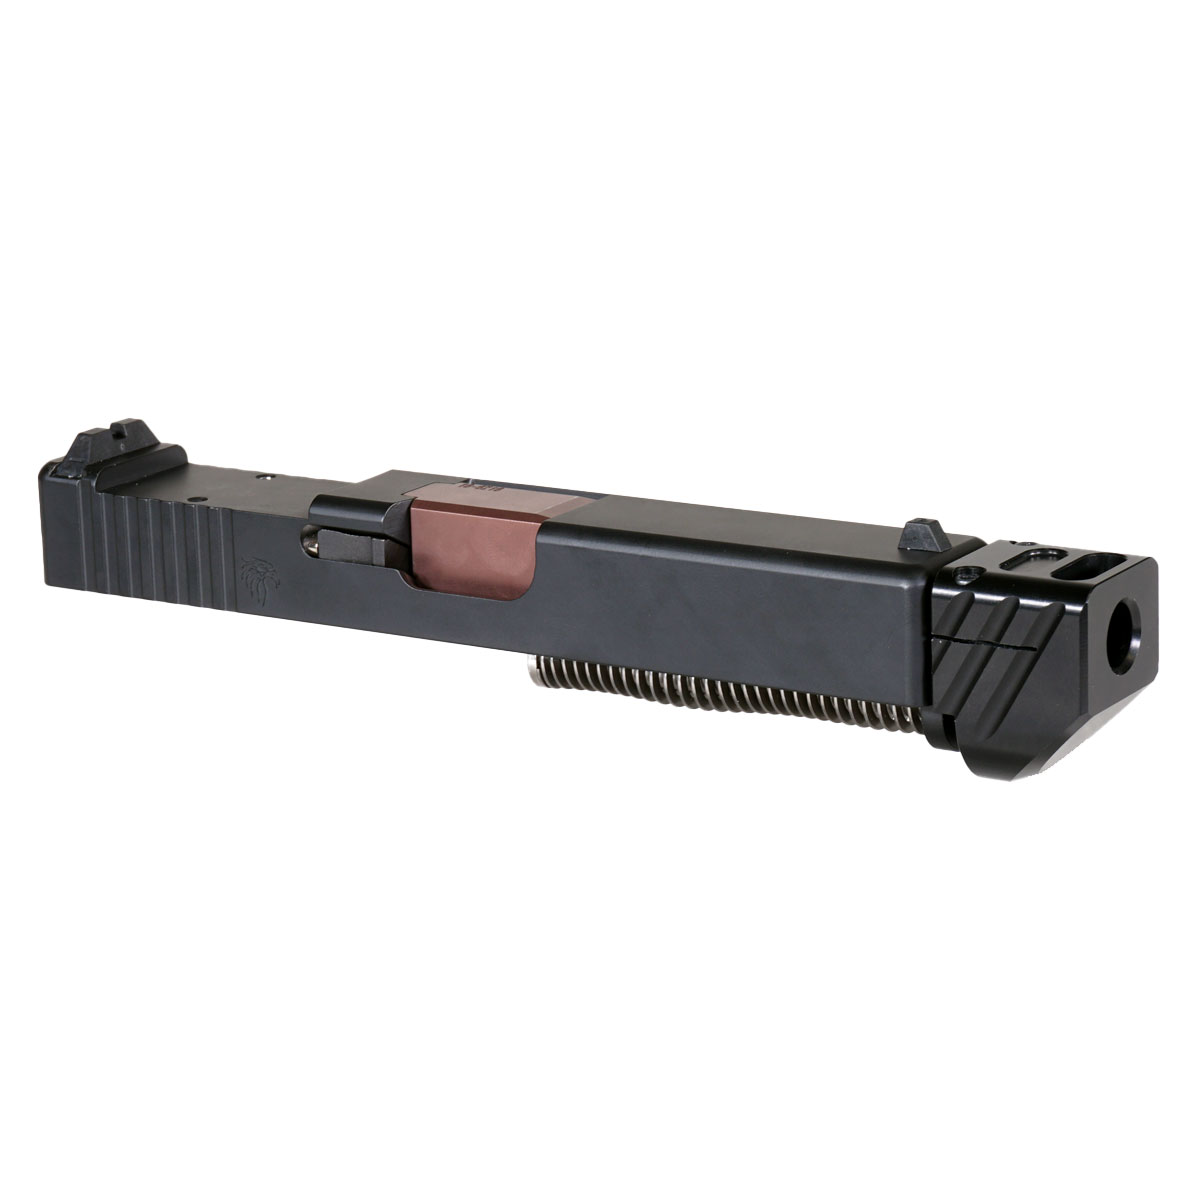 DD 'Blockbuster V4 w/ Black Compensator' 9mm Complete Slide Kit - Glock 19 Gen 1-3 Compatible